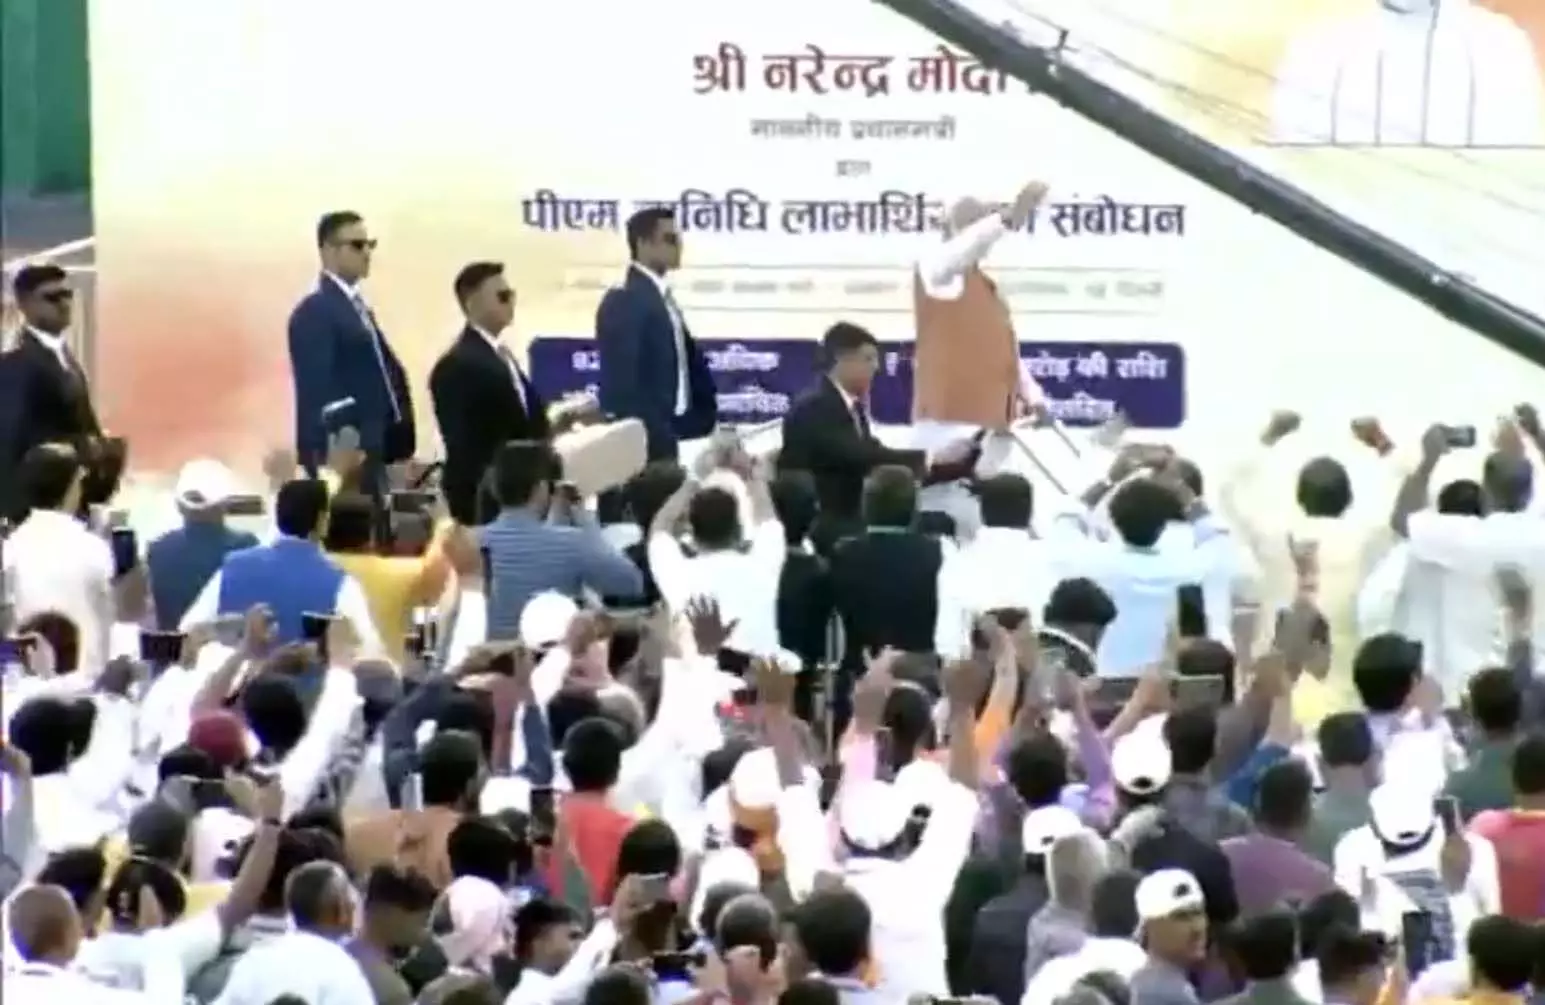 प्रधानमंत्री नरेंद्र मोदी जवाहरलाल नेहरू स्टेडियम पहुंचे, देखें LIVE